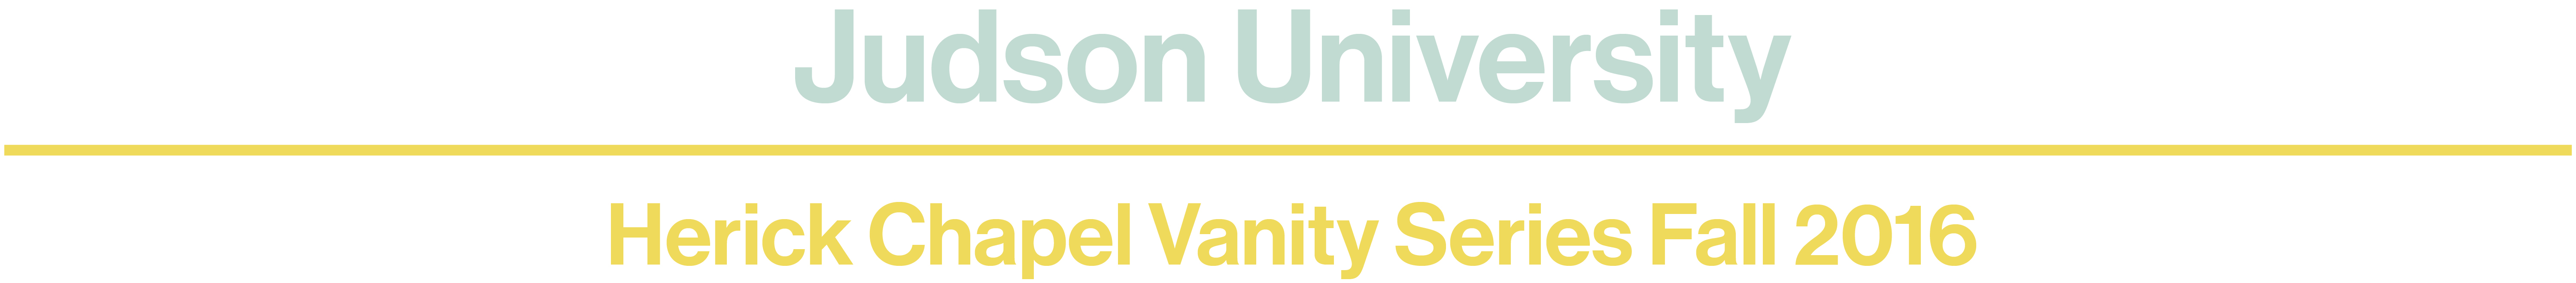 vanity-website-title